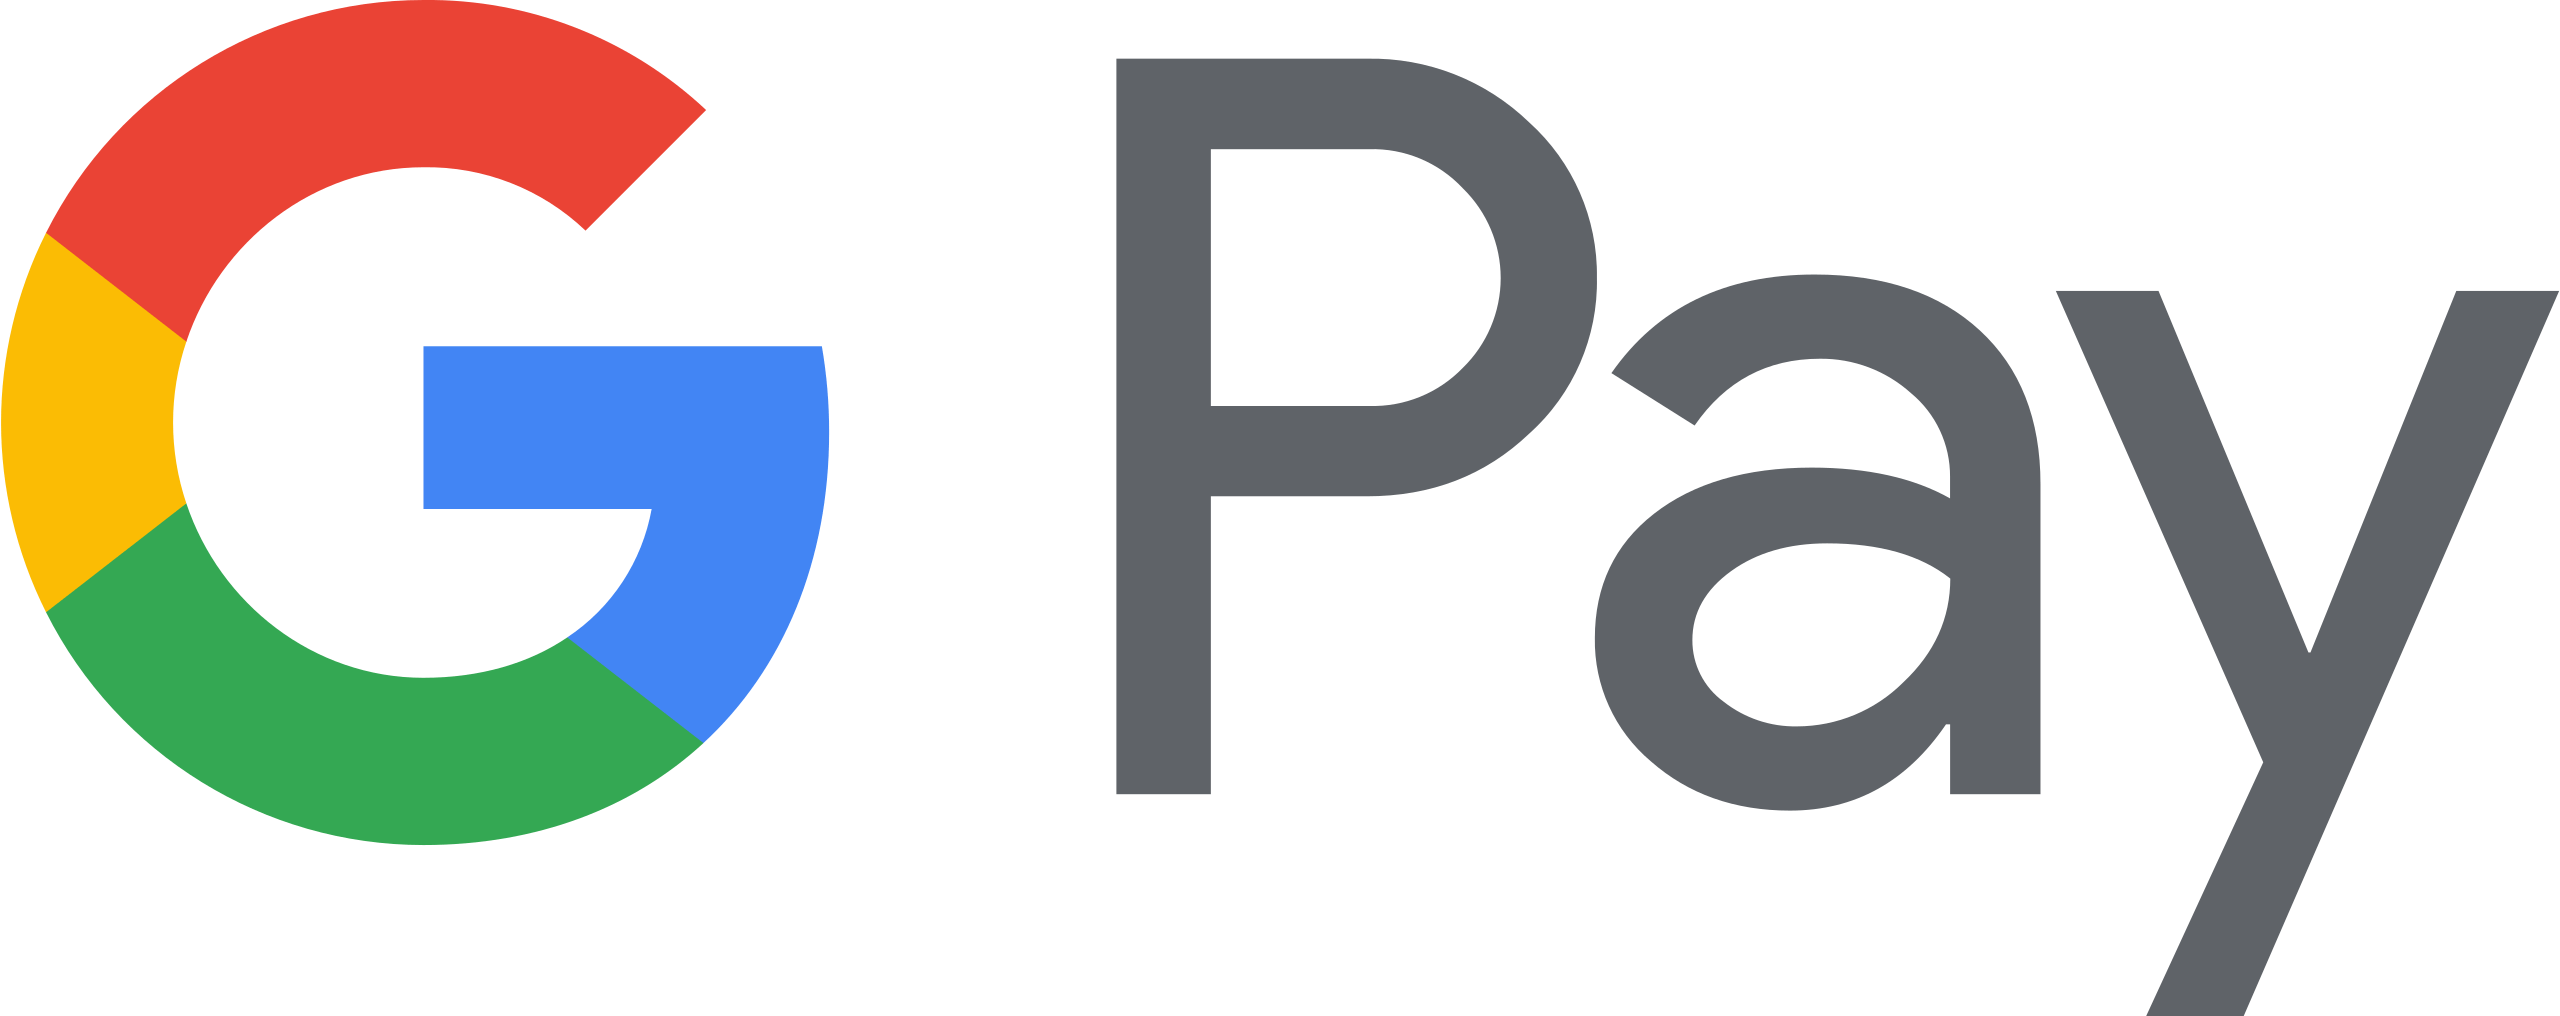 Google Pay GPay Logo 2018 2020.svg ❤ DOOKOŁAOKA